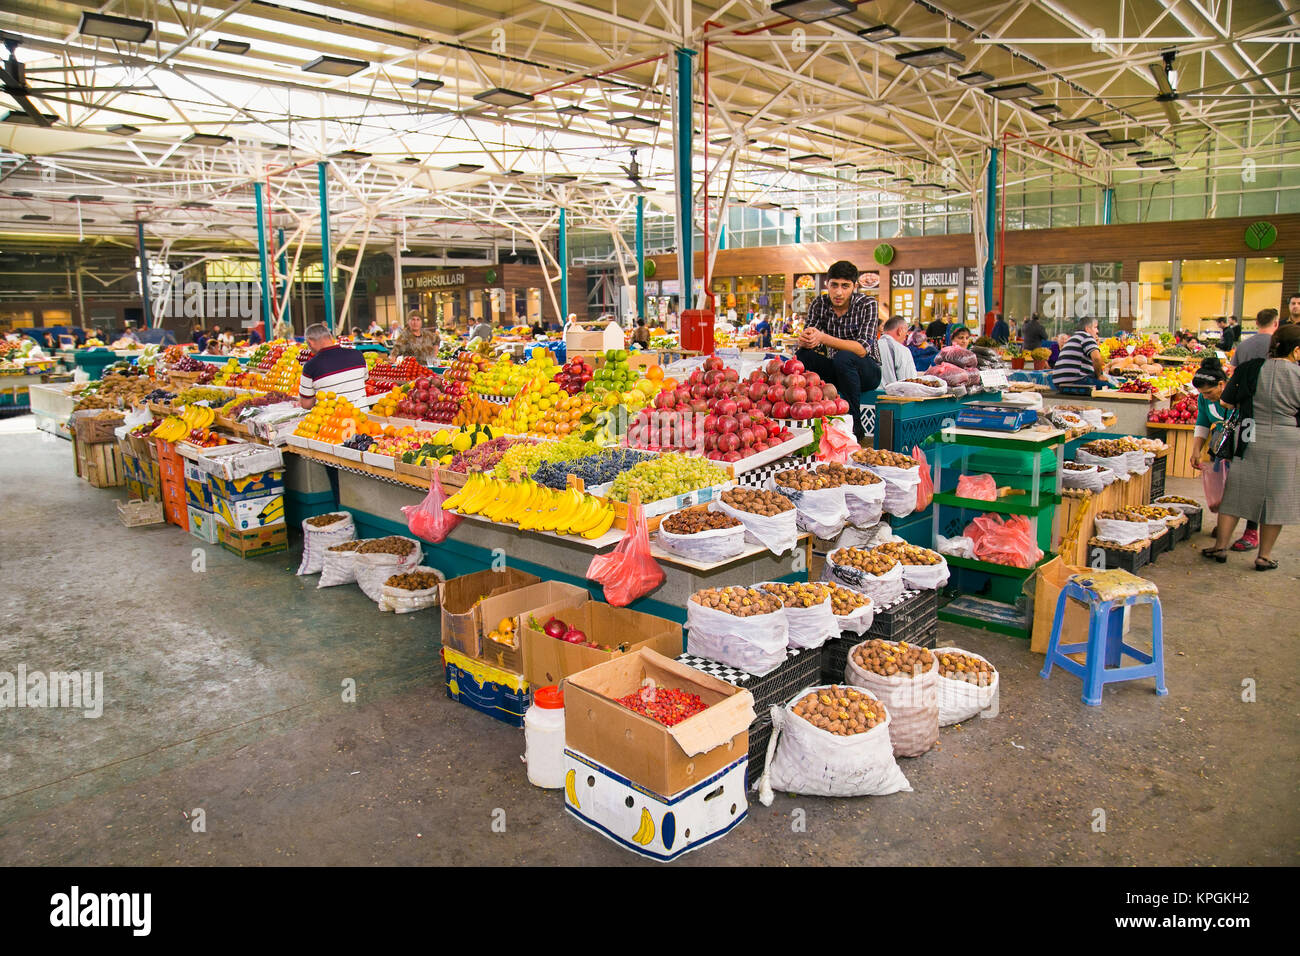 BAKU, Aserbaidschan - Okt 4, 2016: Menschen und Früchte Verkäufer am grünen Markt in Baku am Okt 4, 2016. Aserbaidschan Stockfoto